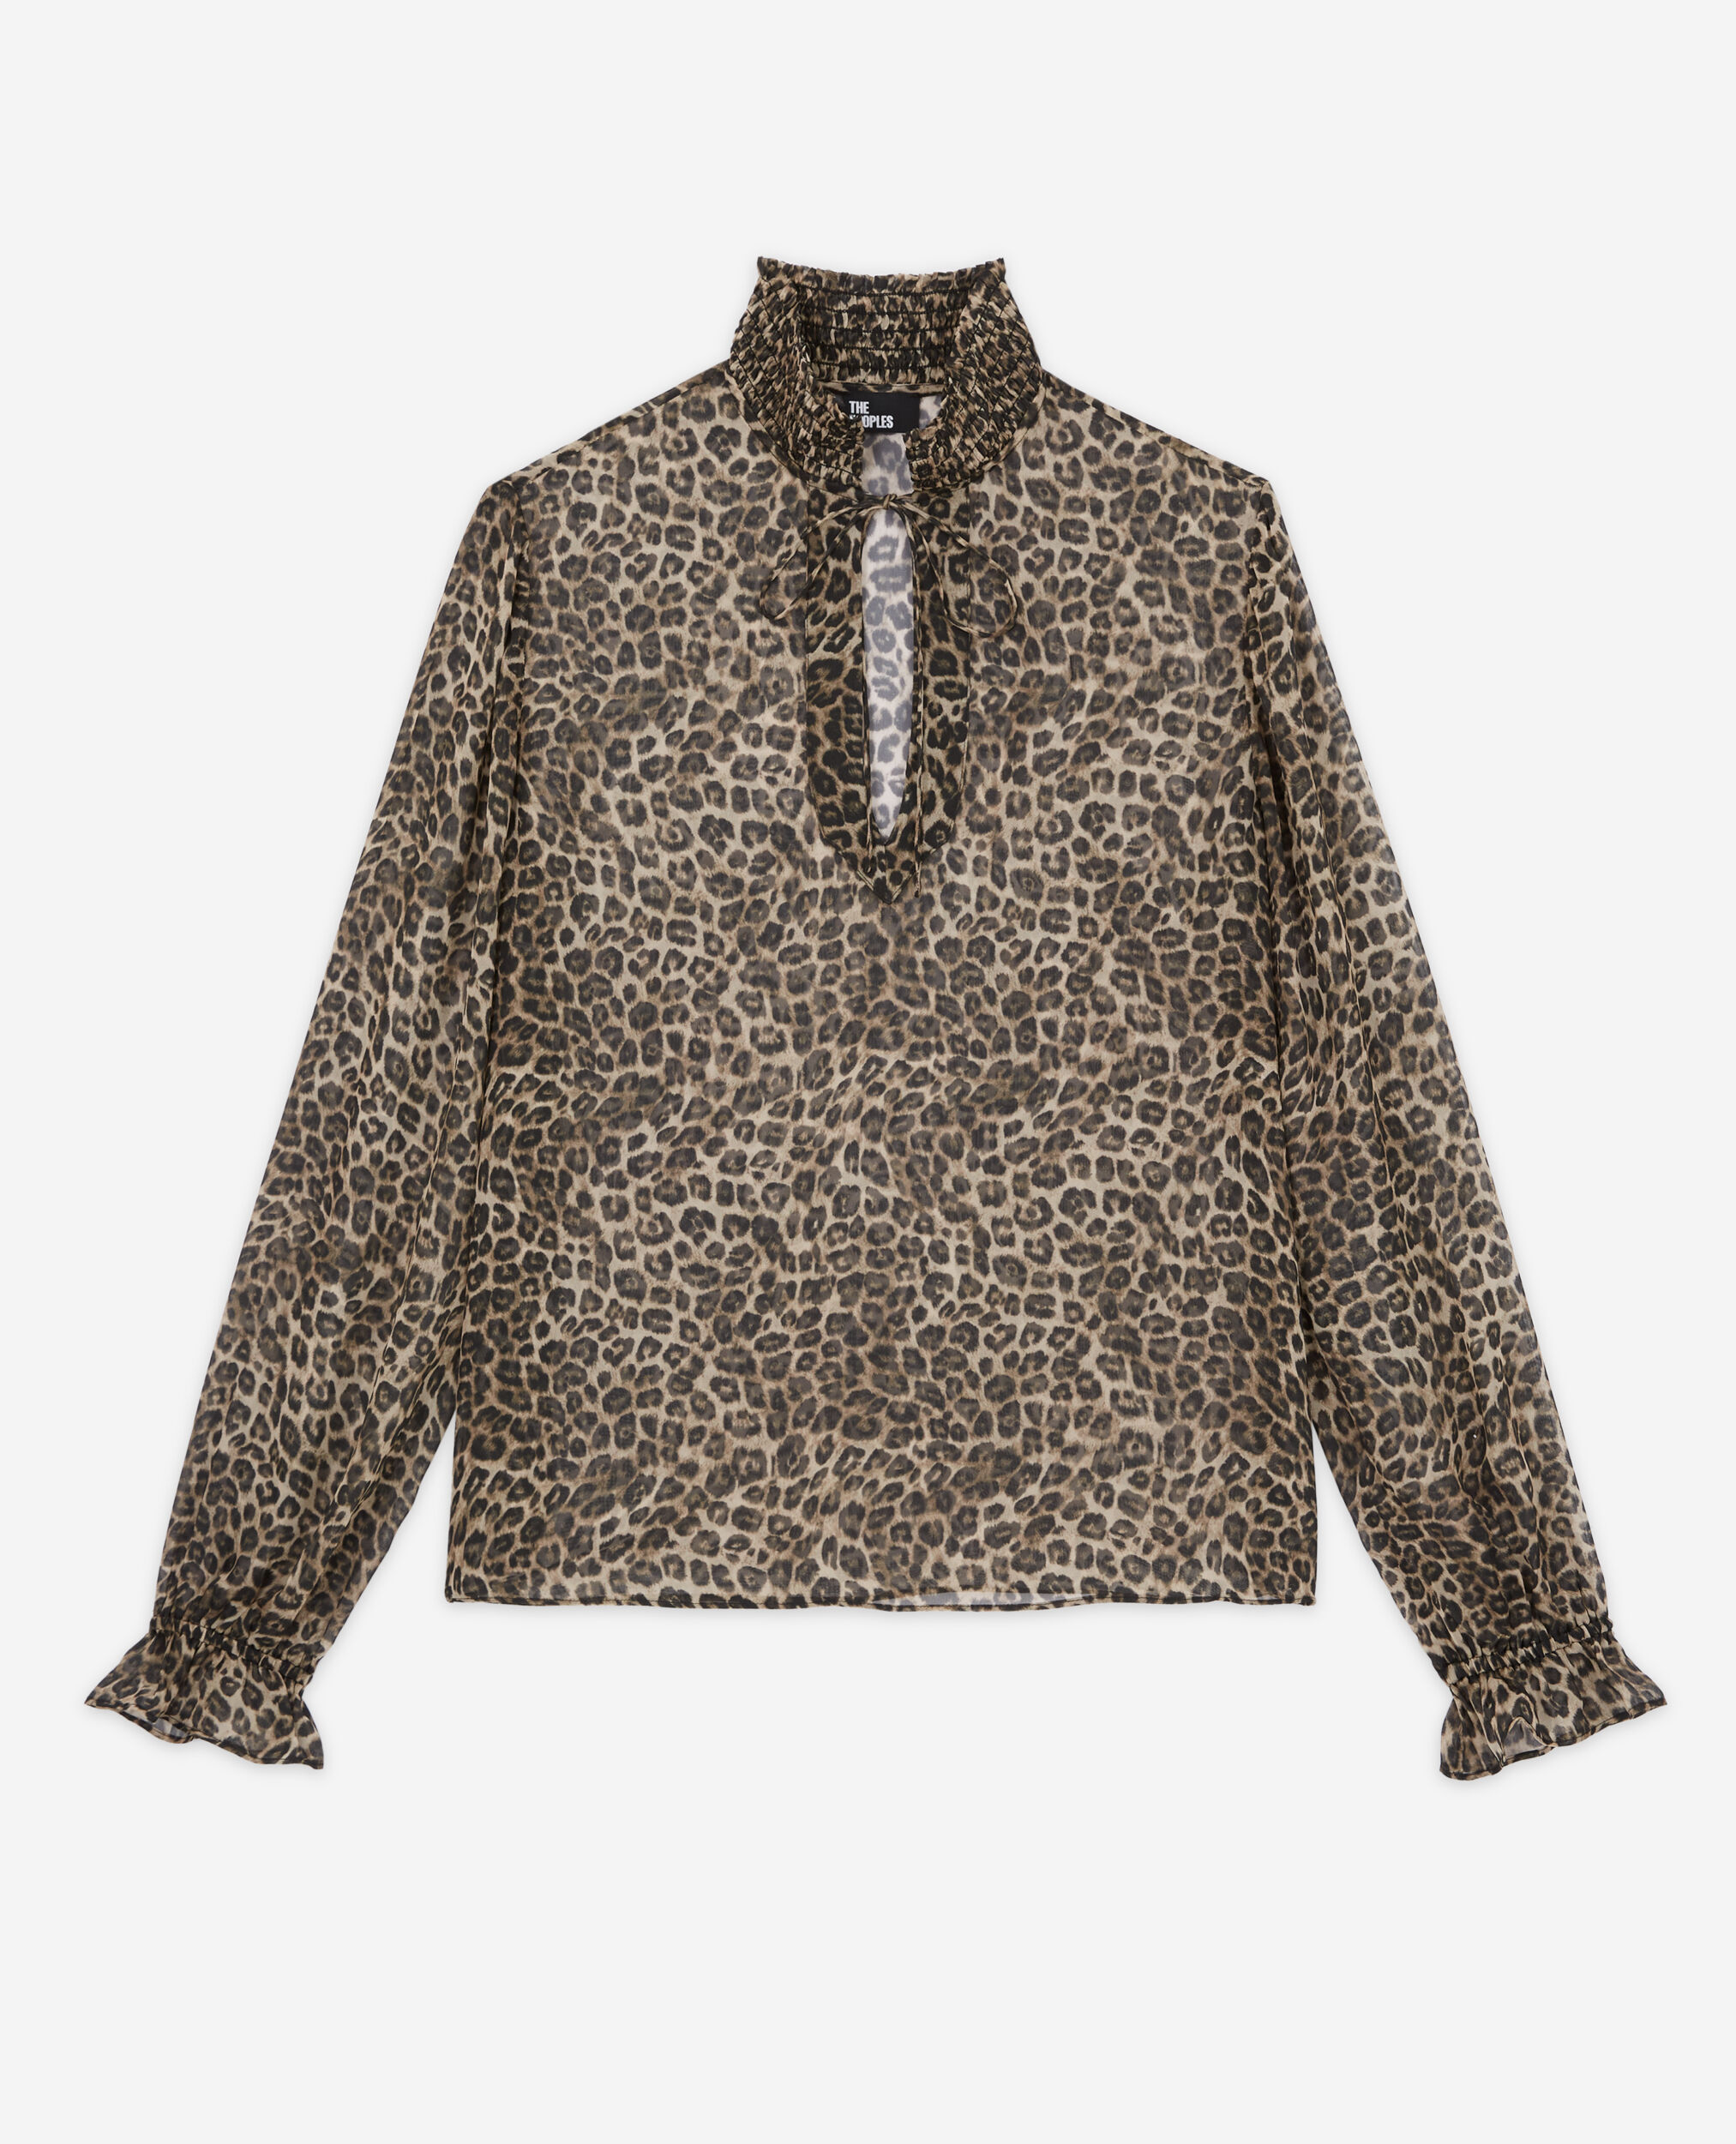 Blusa leopardo, LEOPARD, hi-res image number null